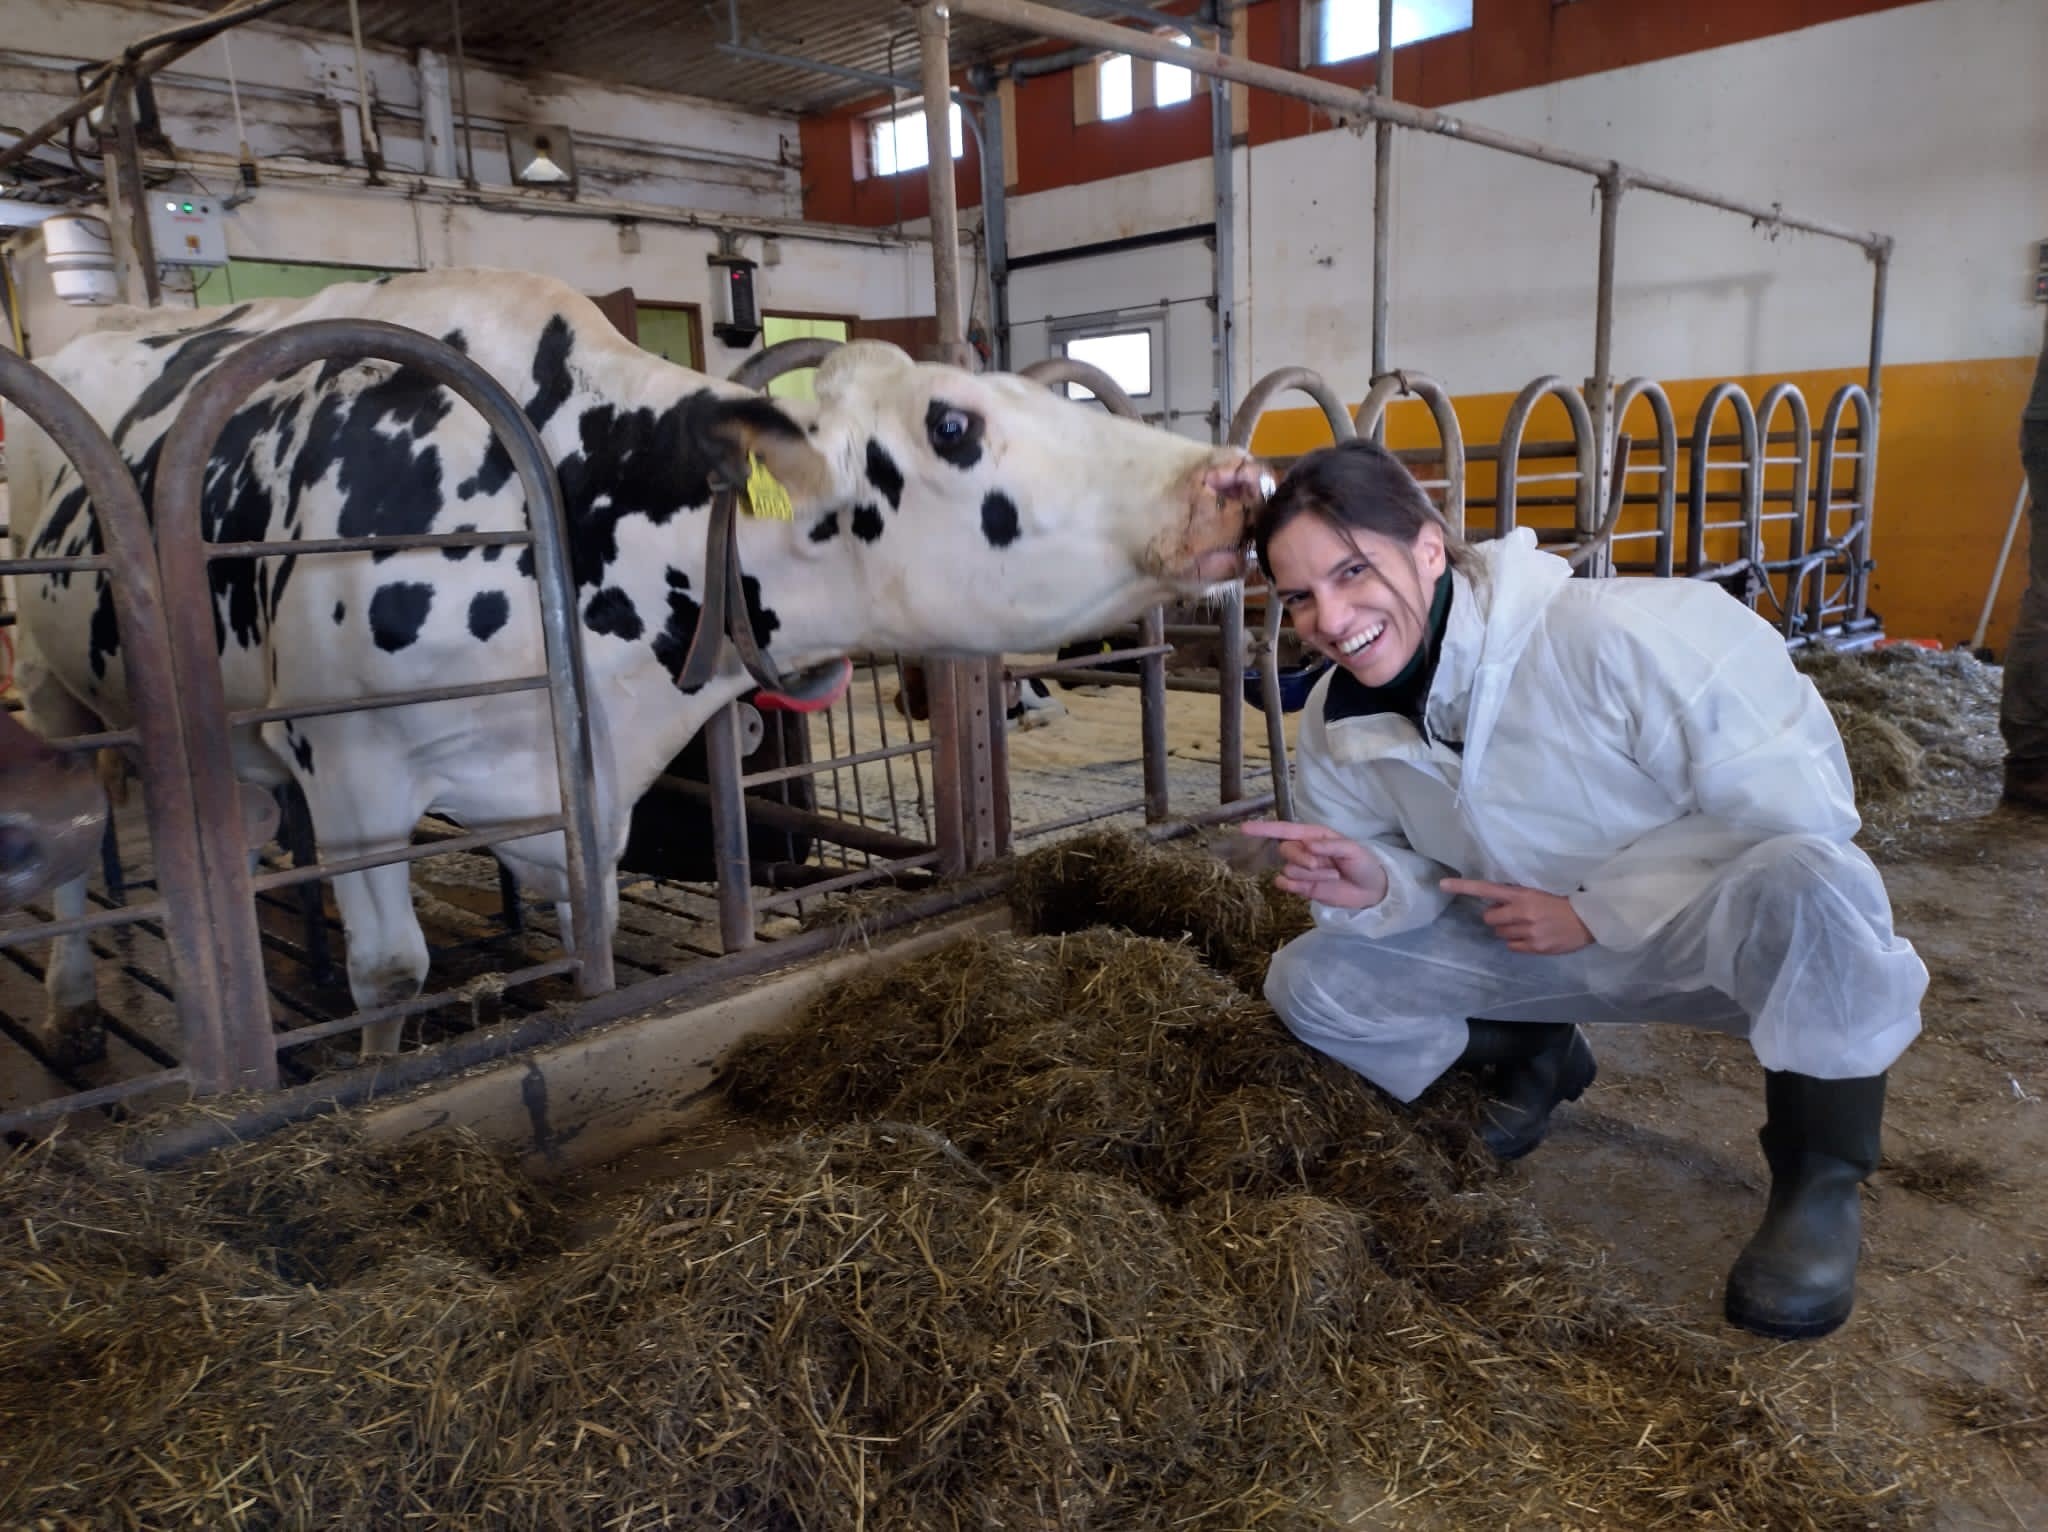 Farming Innovation Programme winner Antler Bio pioneering research on cattle epigenetics